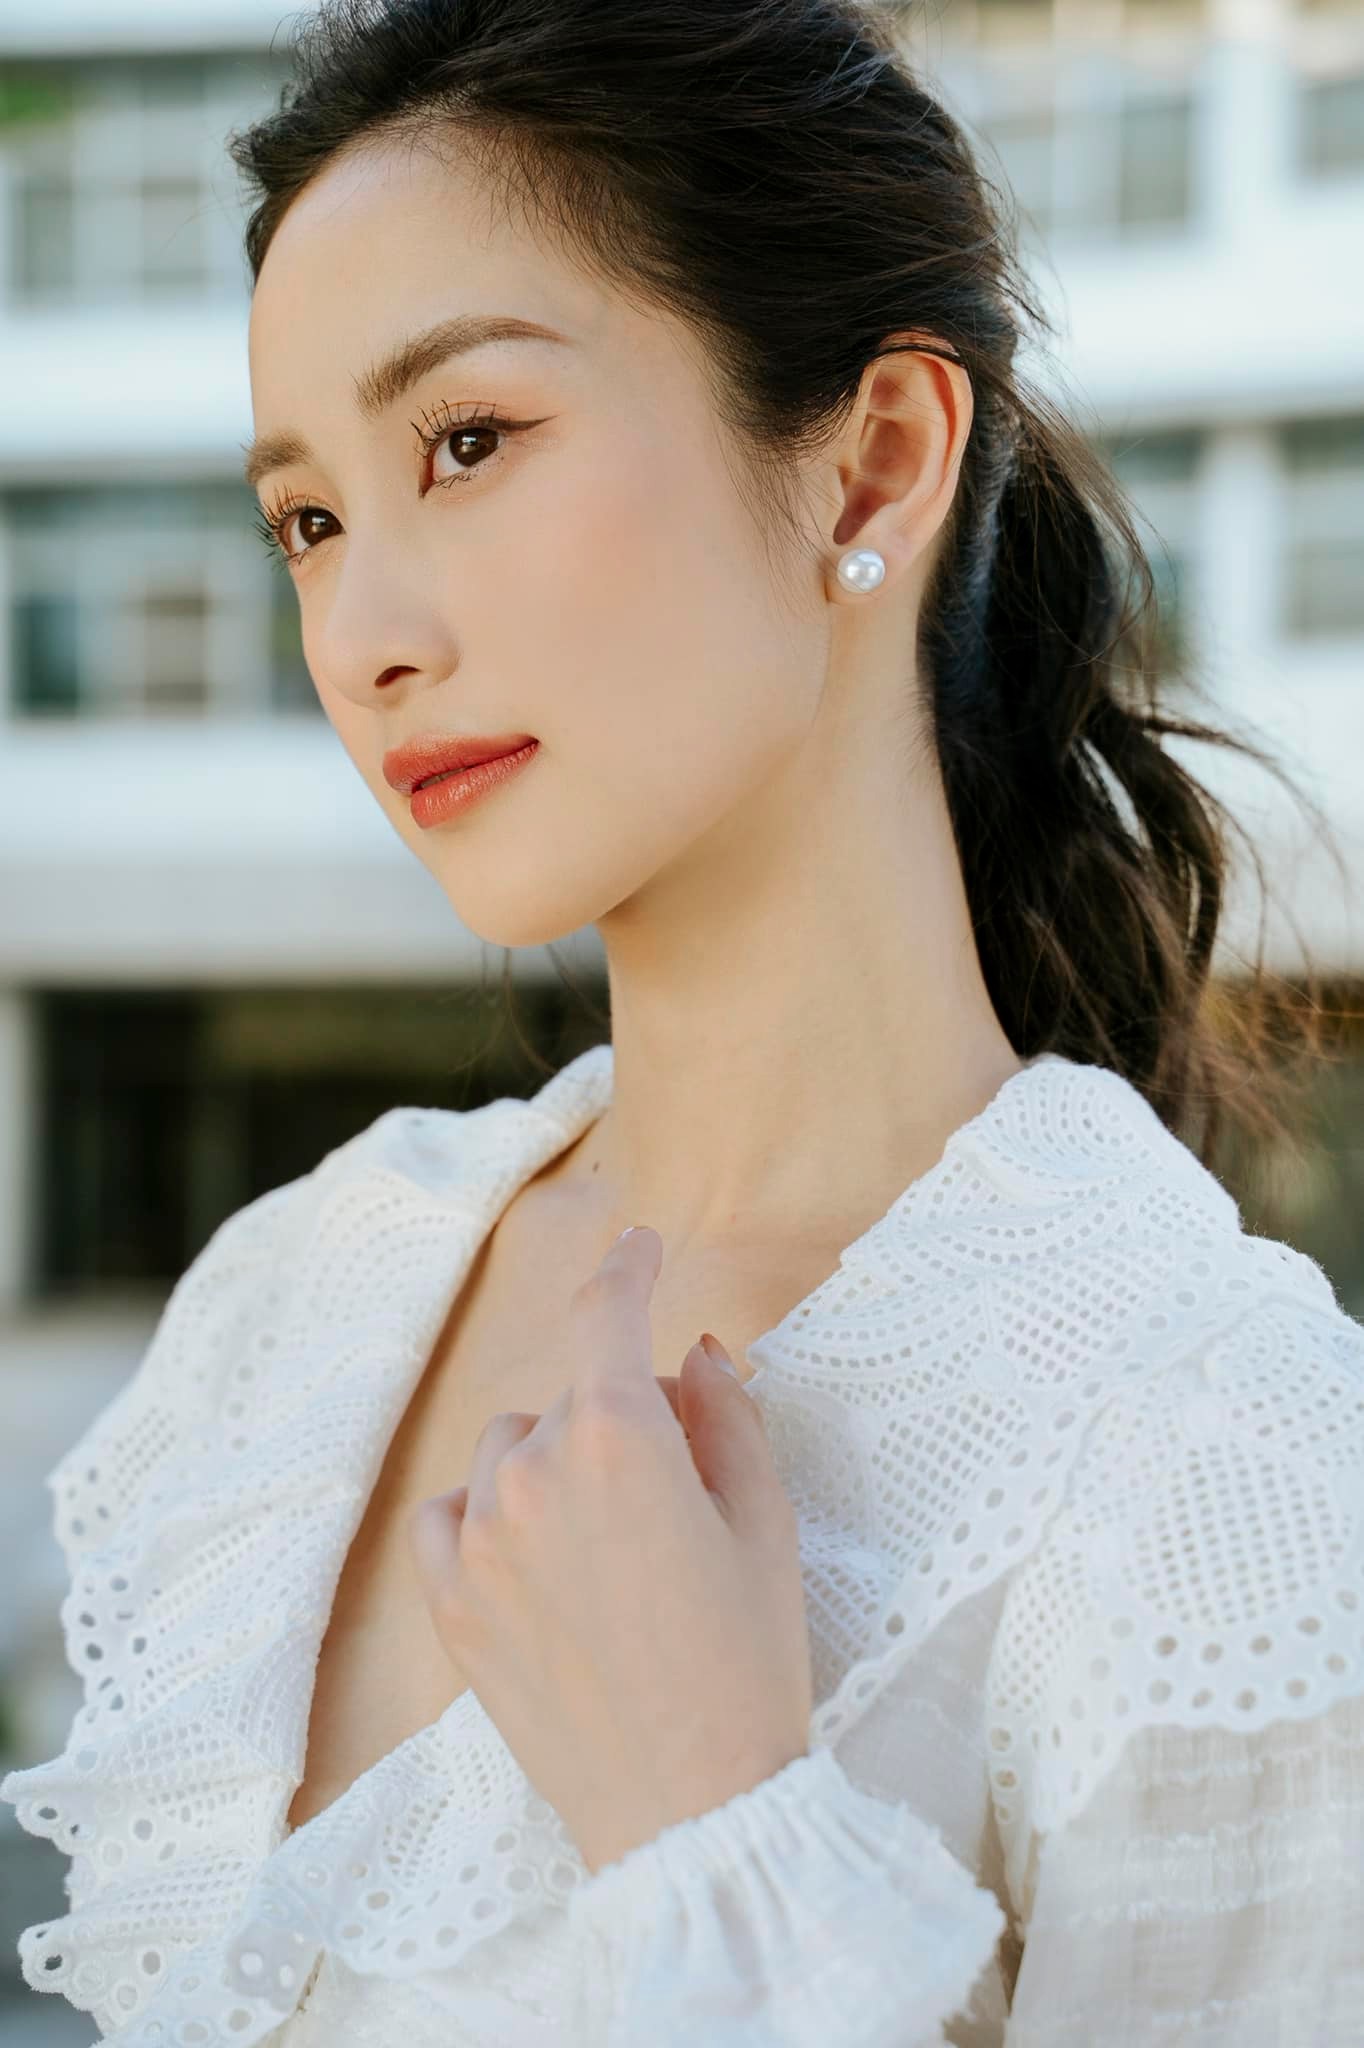 Jun Vũ khoe nhan sắc xinh đẹp trong tấm ảnh khoe góc nghiêng thần thánh. Cô bày tỏ: 'Một chiếc ảnh cận mặt cho mọi người đỡ nhớ mình'.